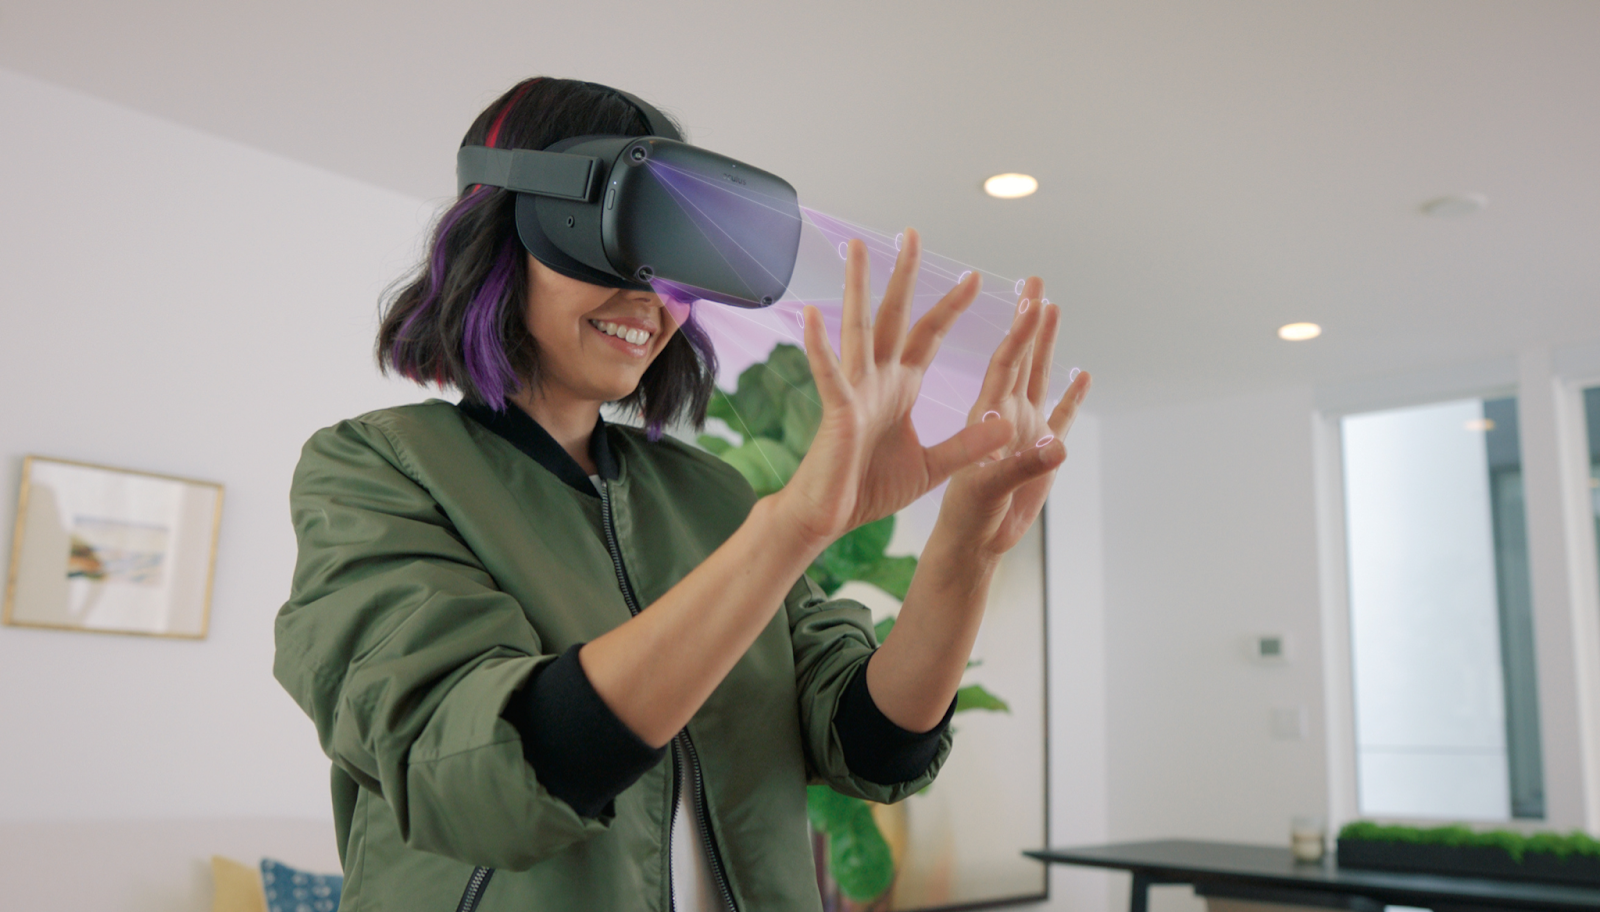 Les buzzwords de l’industrie 4.0 – Casque de réalité virtuelle